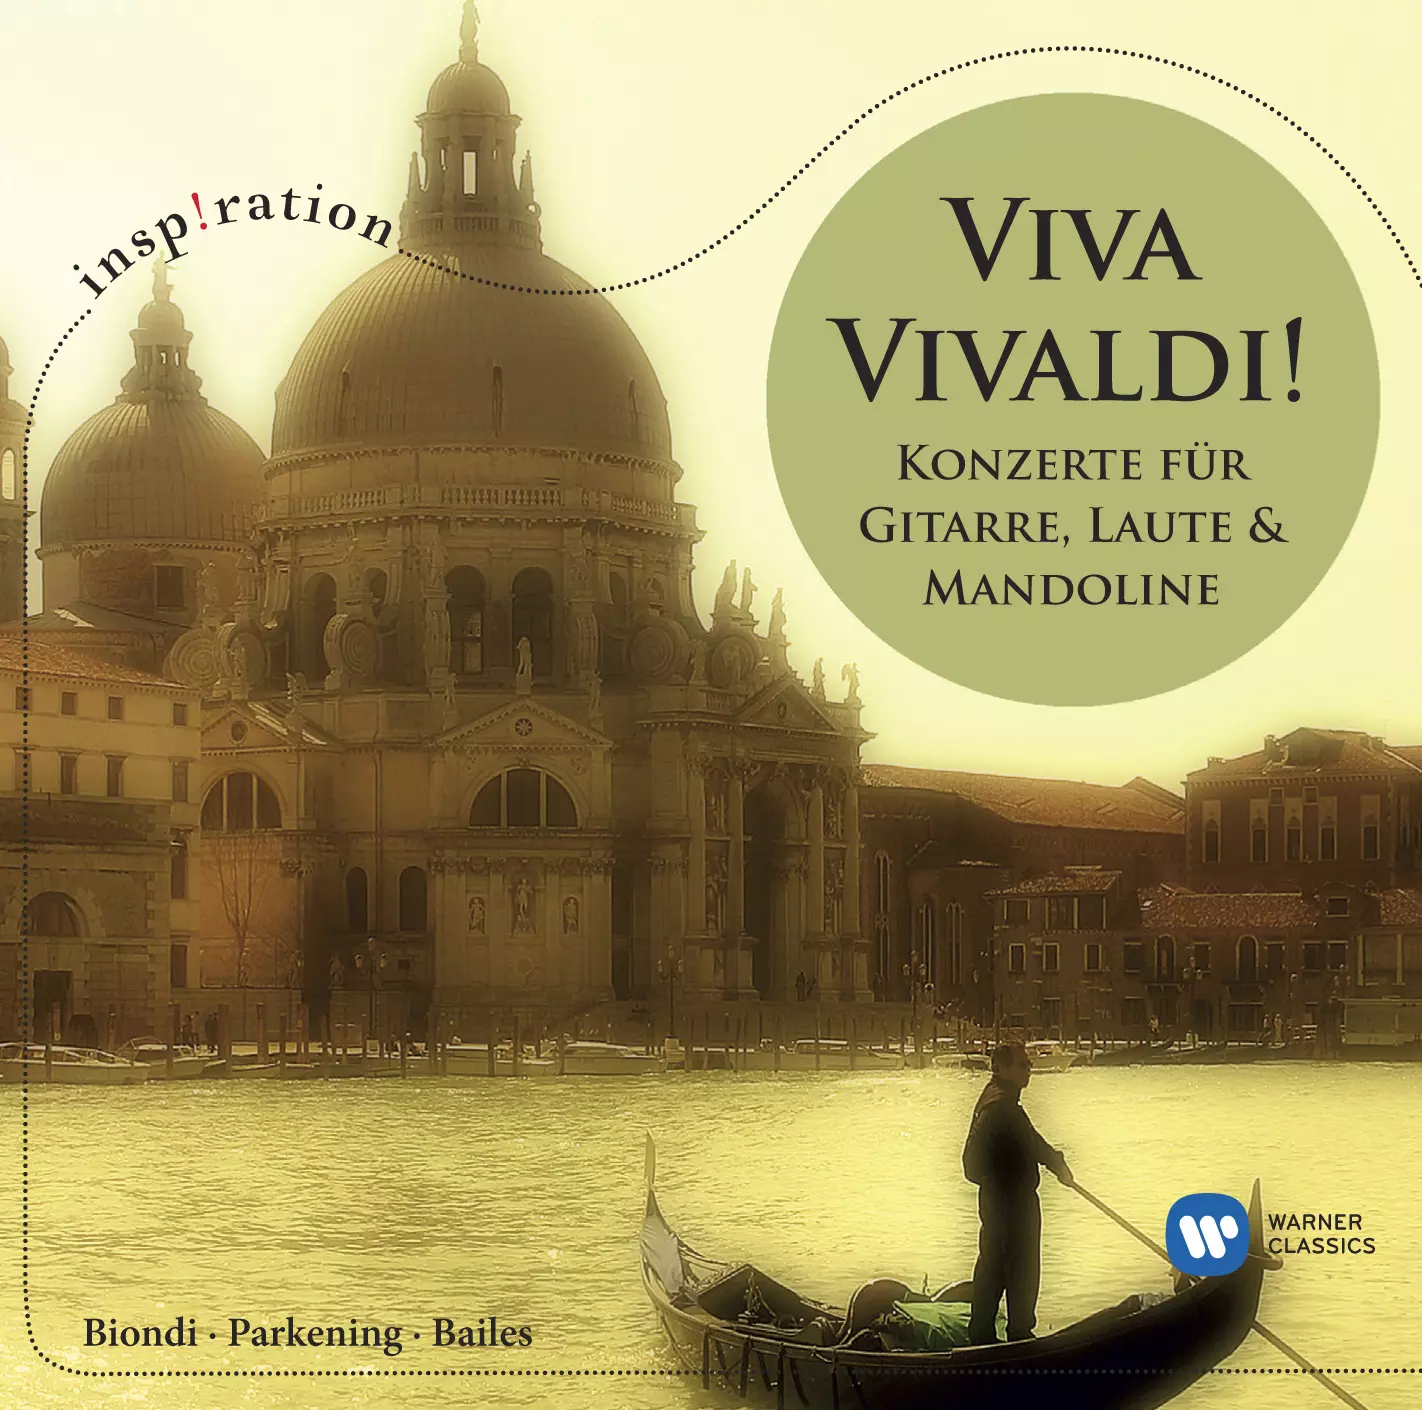 Viva Vivaldi! Guitar, Lute & Mandolin